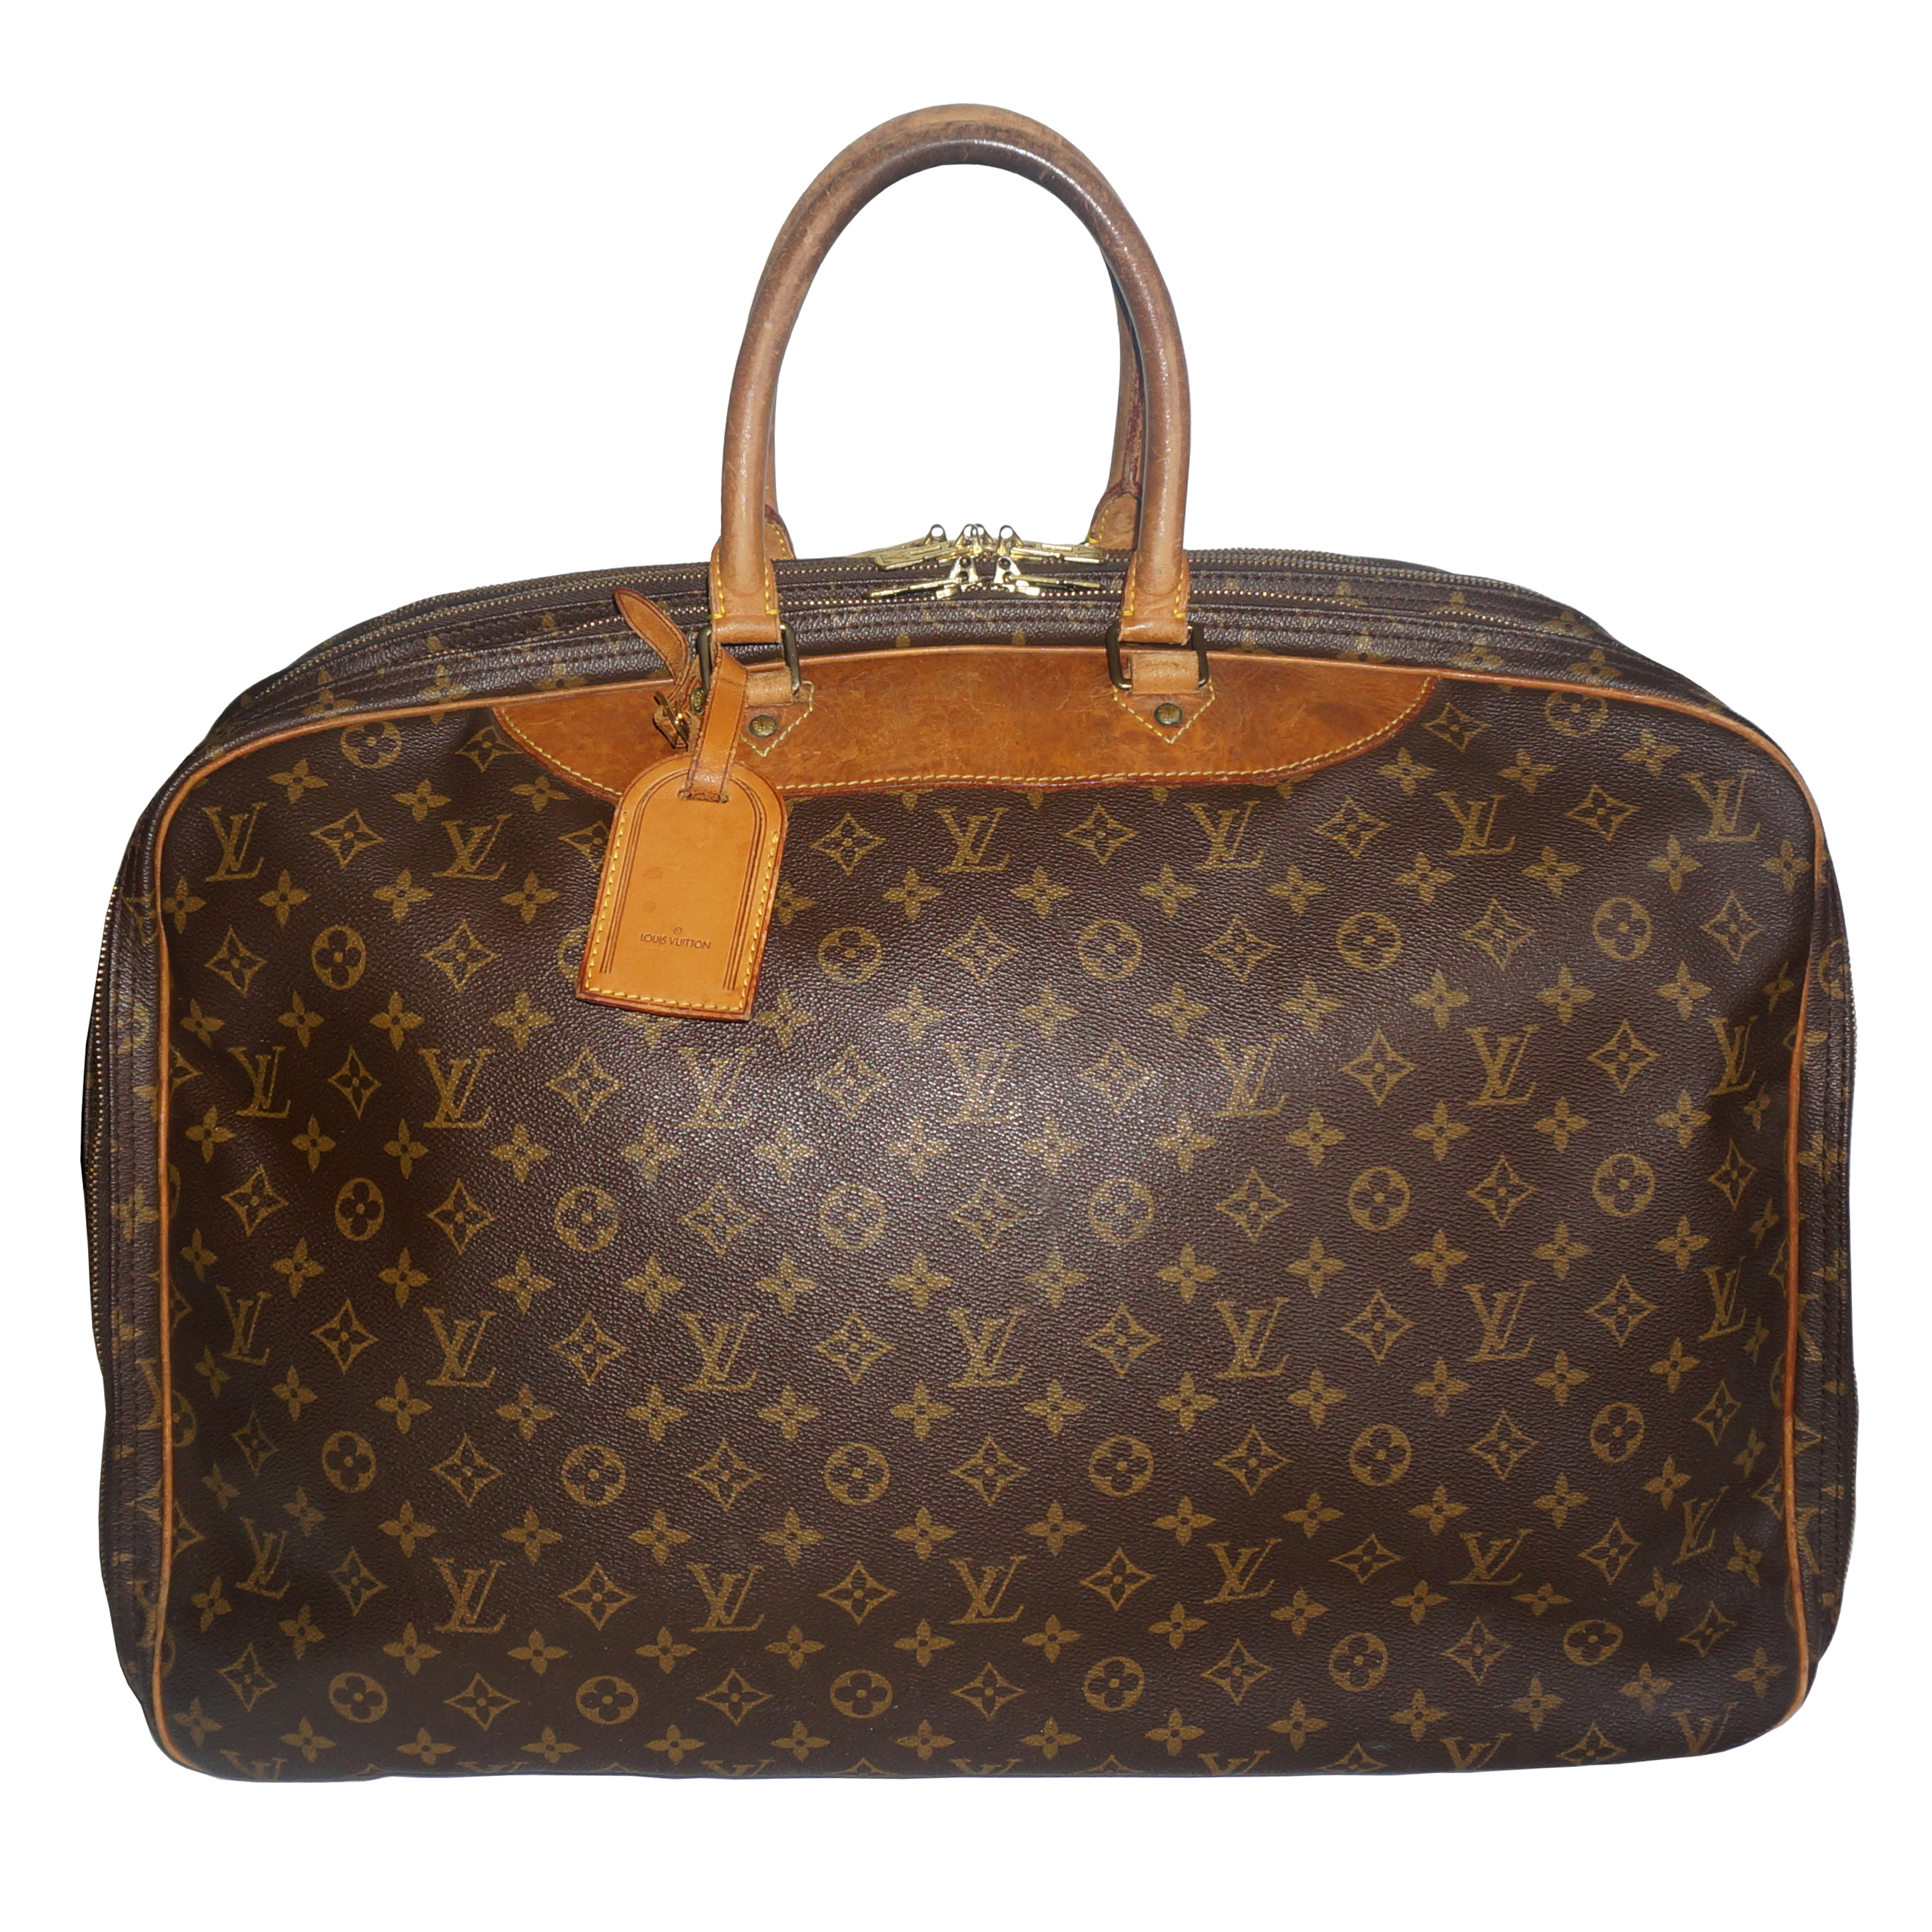 SOLD!! Louis Vuitton 3-Compartment Travel Suitcase